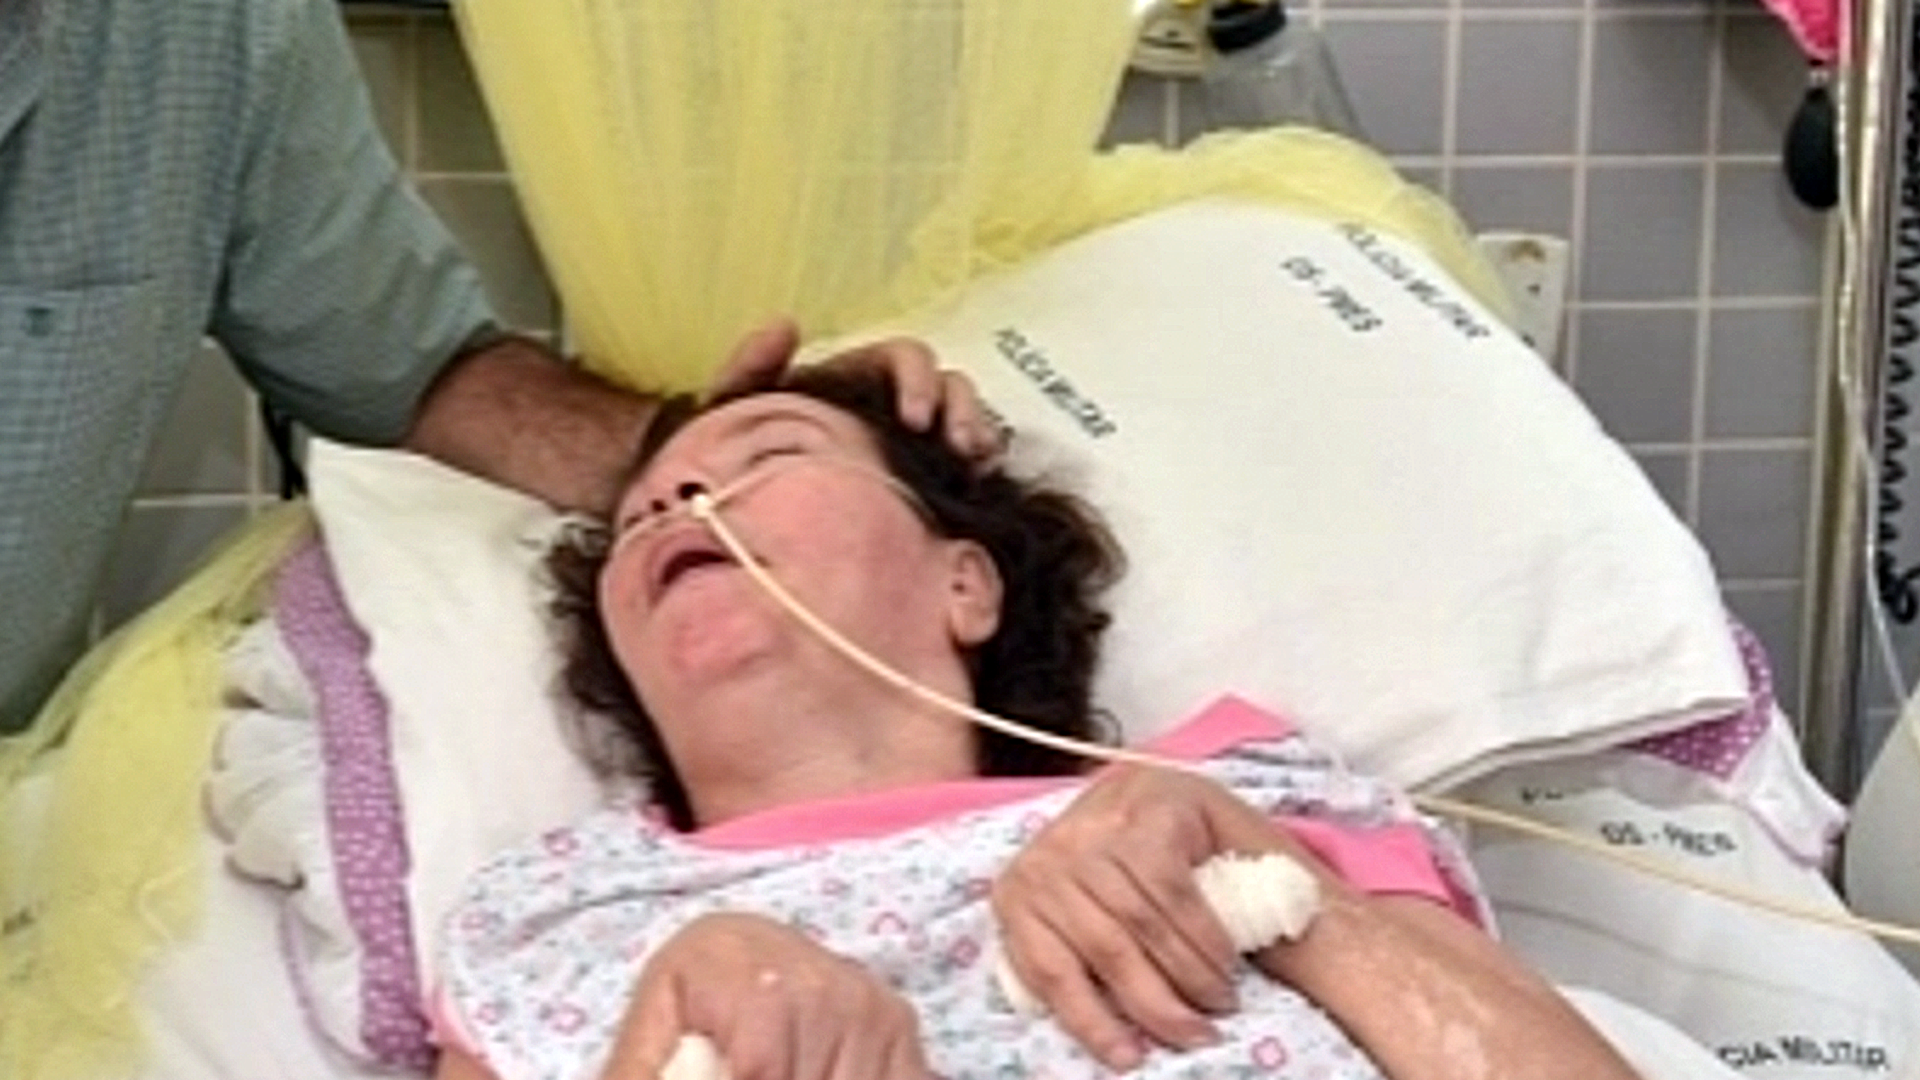 Vítima de atropelamento no ano 2000 e sem identificação oficial, a mulher viveu desde então em estado vegetativo no Hospital da Polícia Militar; caso dela mobilizou buscas por familiares no Brasil